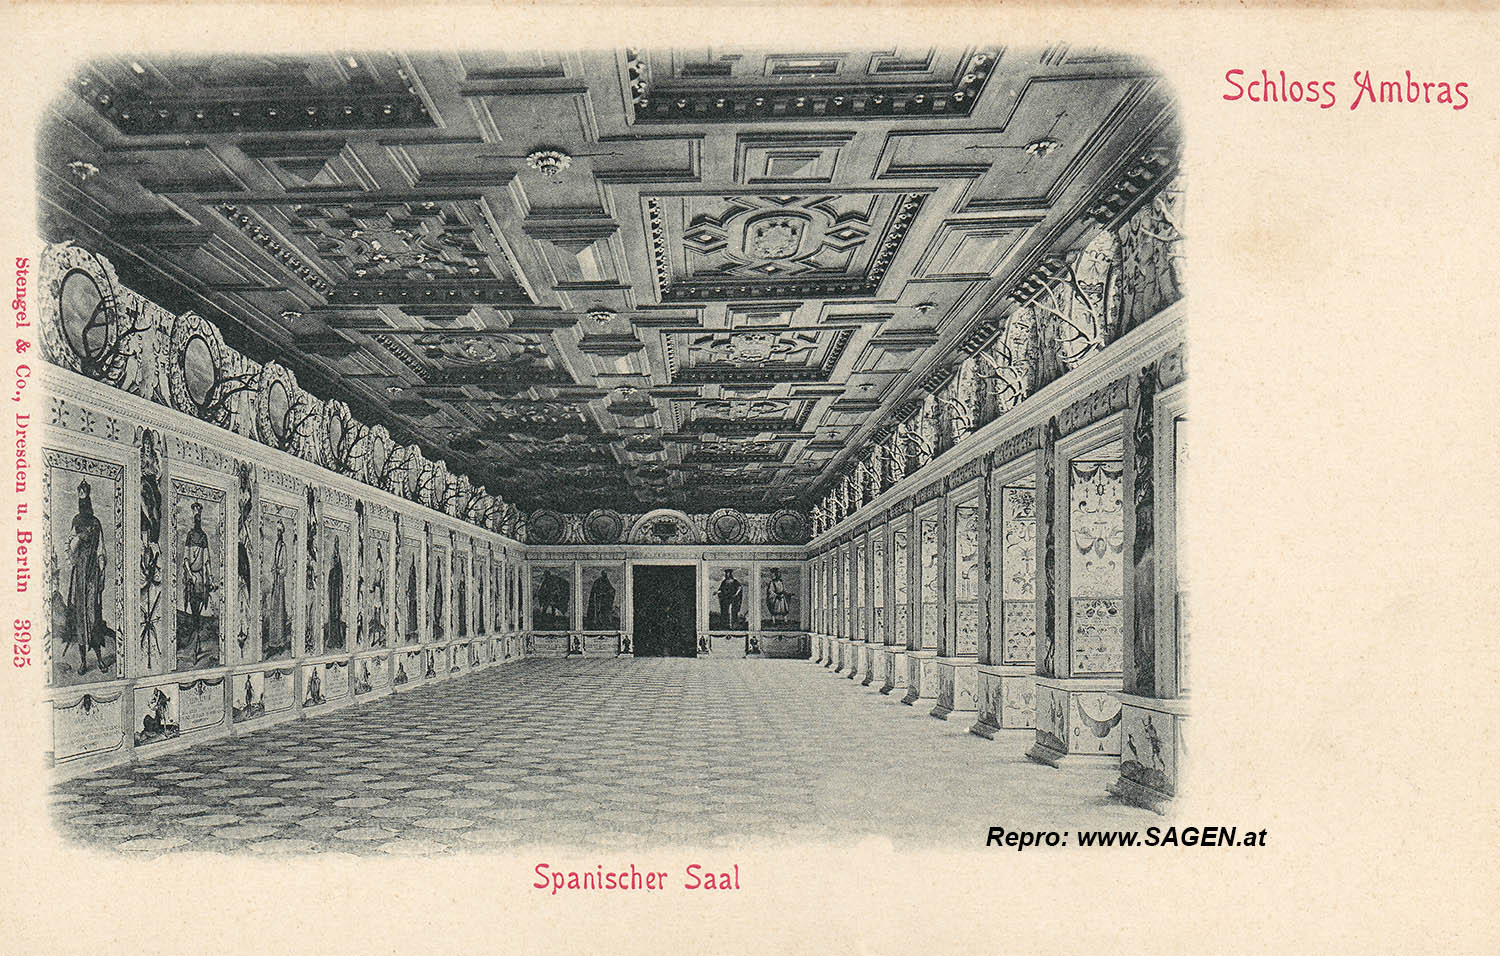 Schloss Ambras - Spanischer Saal